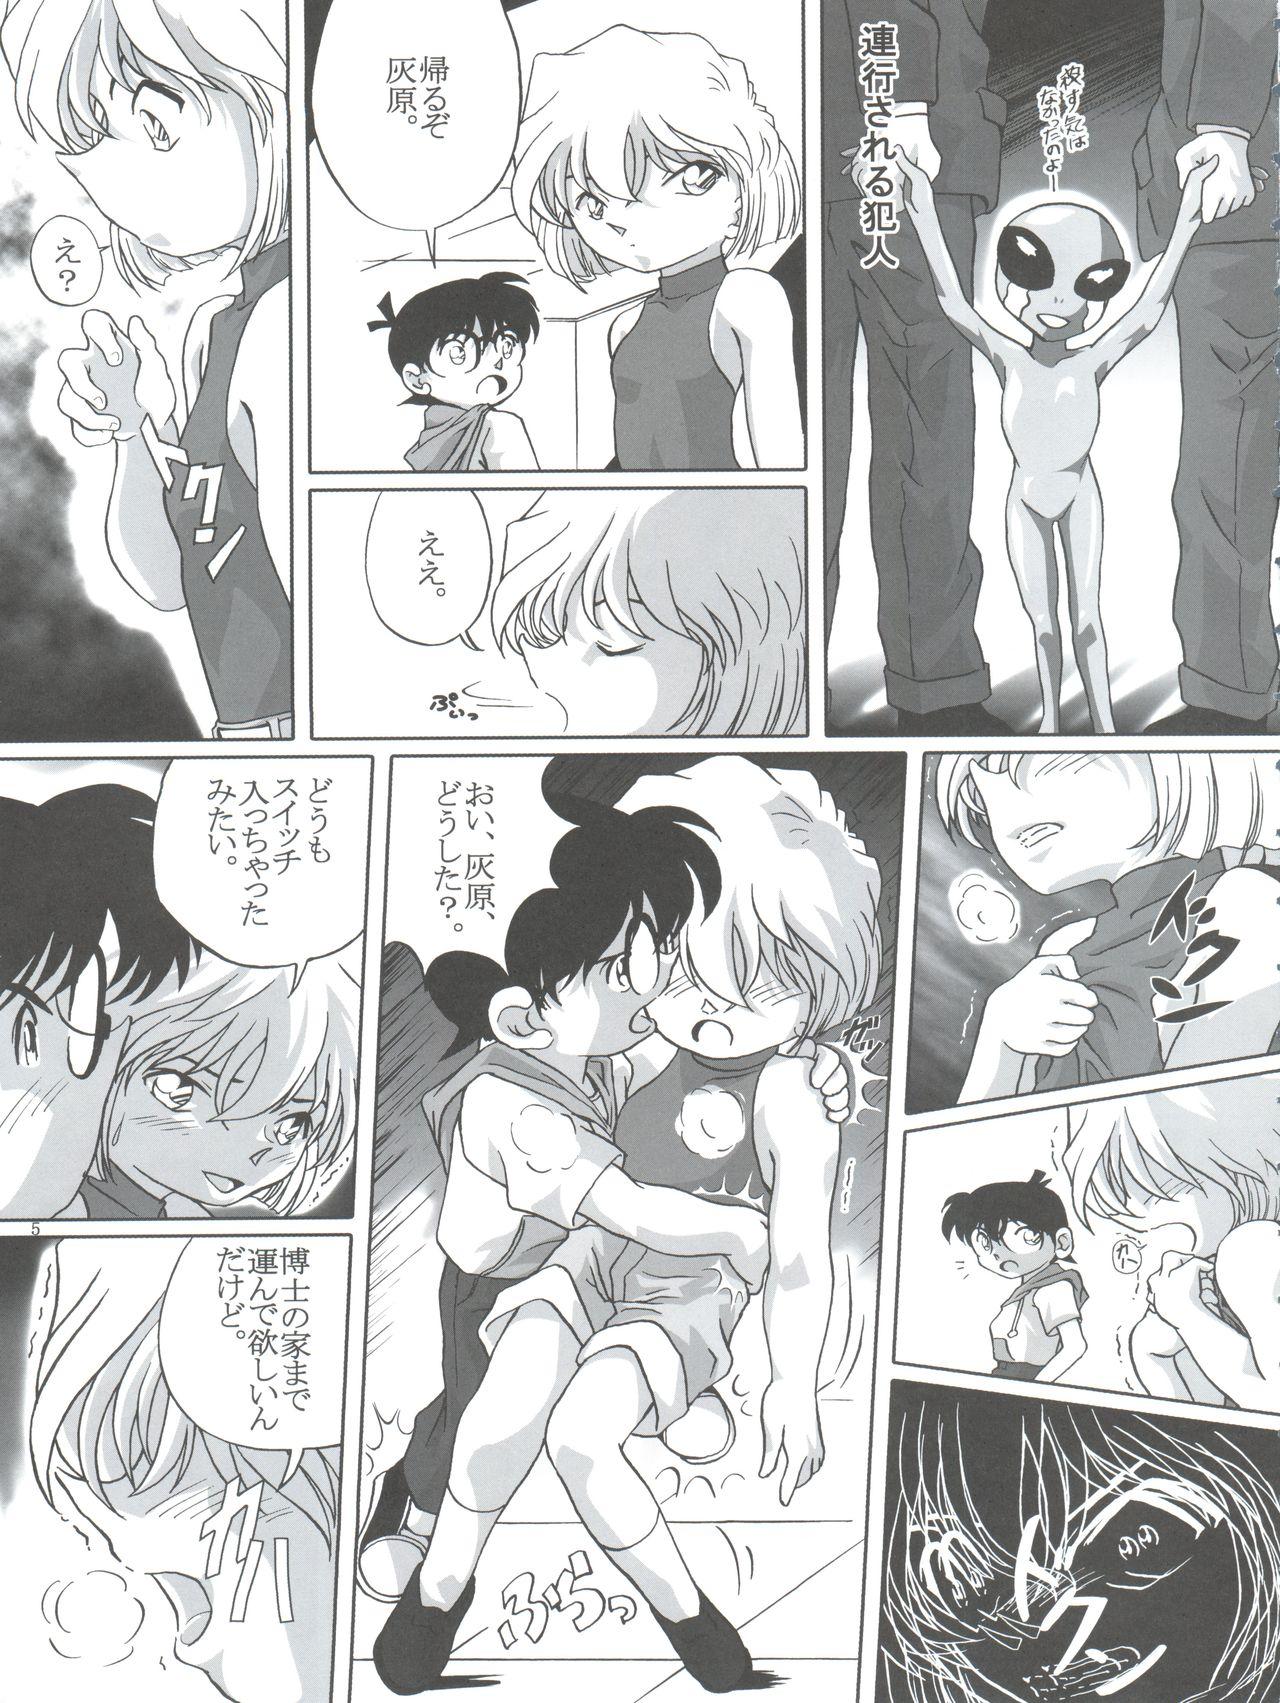 Erotic (C64) [Studio Empty (Nishi)] Shelley's U2 - Sherry-san no Yuuutsu (Detective Conan) - Detective conan Forwomen - Page 5